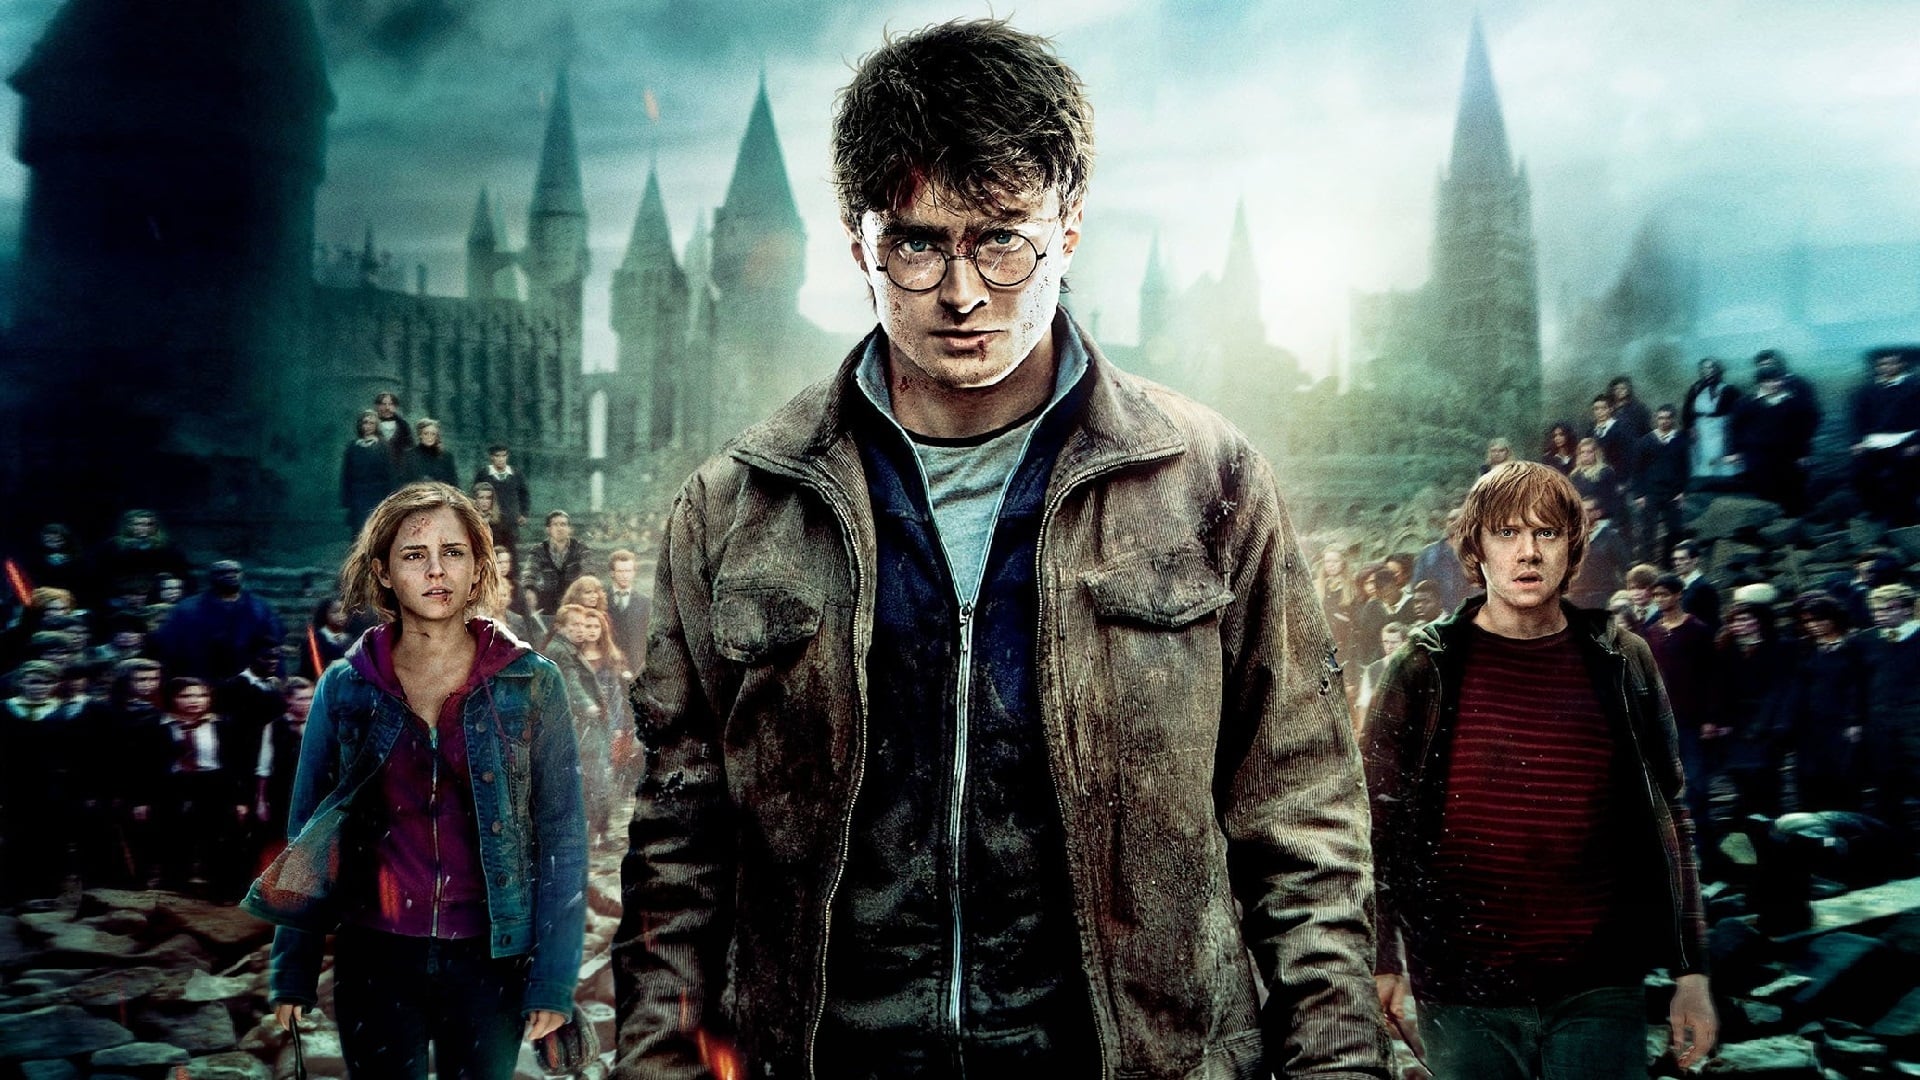 Image du film Harry Potter et les Reliques de la mort : 2e partie cbcpdn6xjaigooil1bkusku8ds4jpg